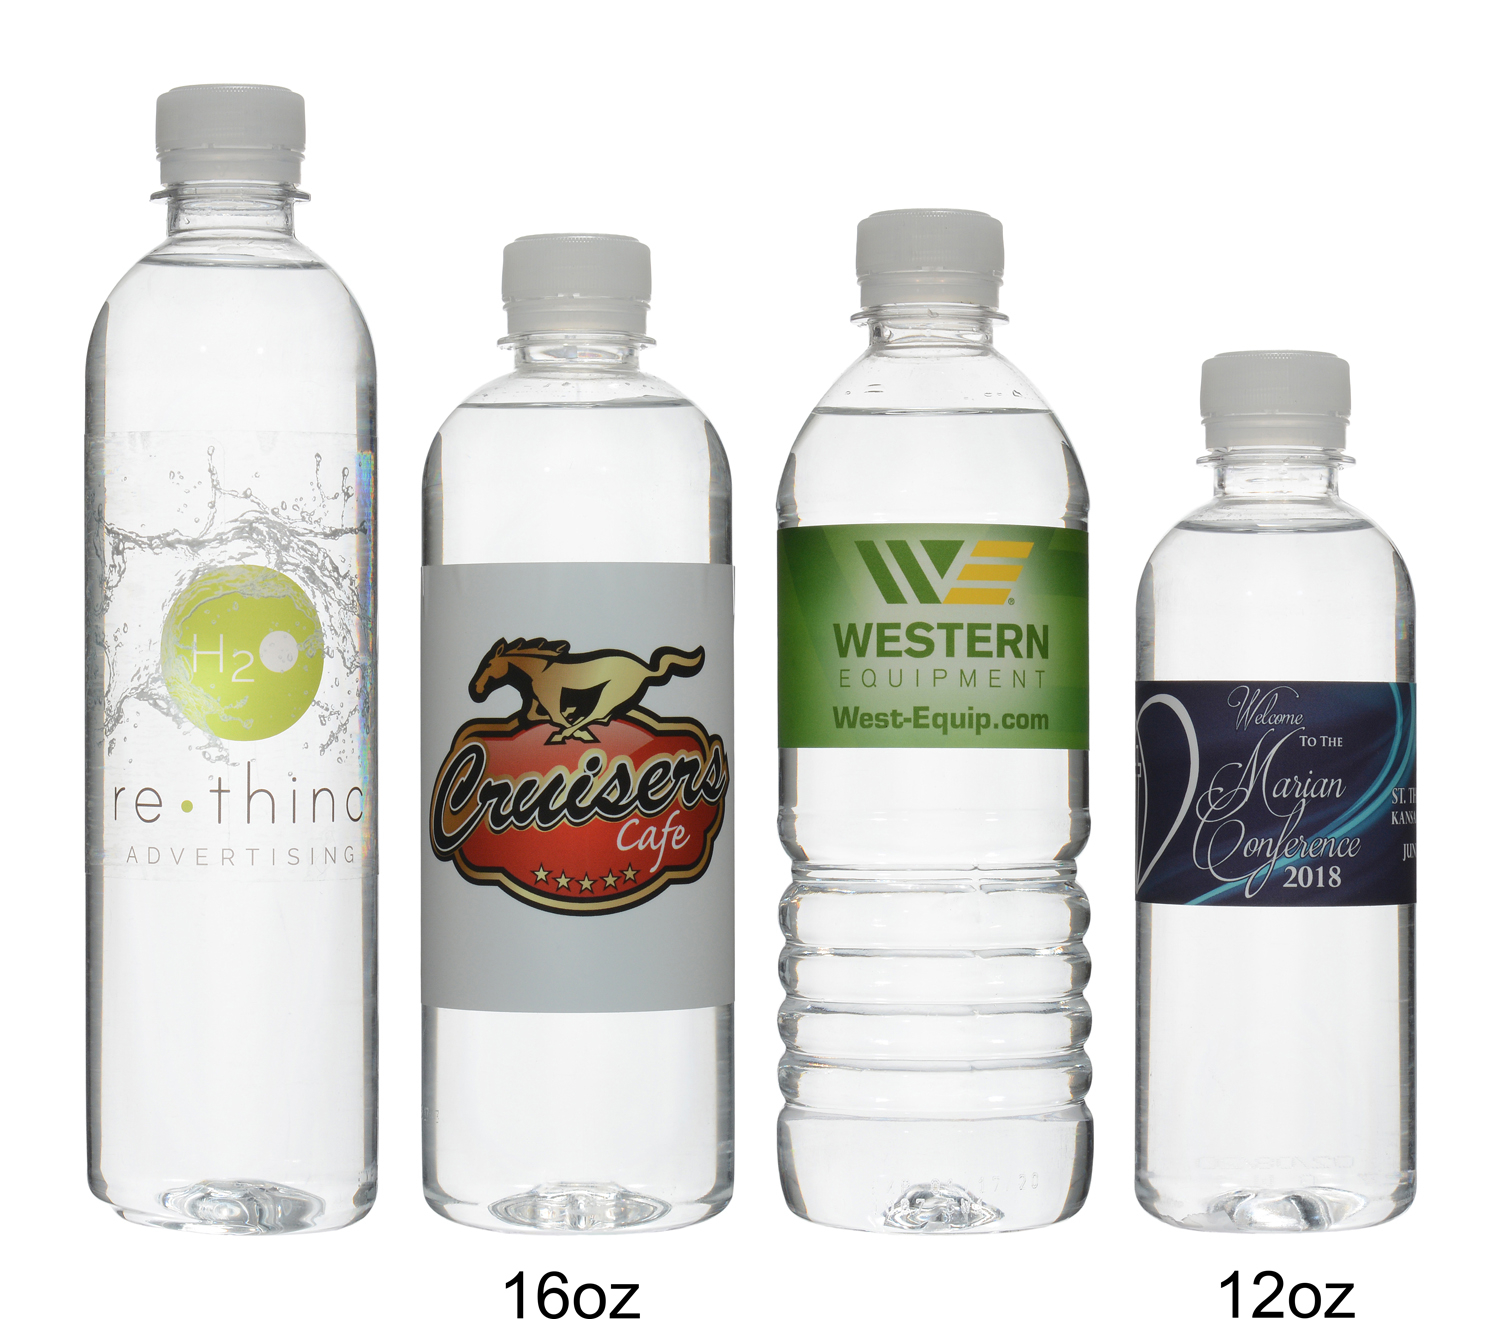 Custom Labeled Bottled Water